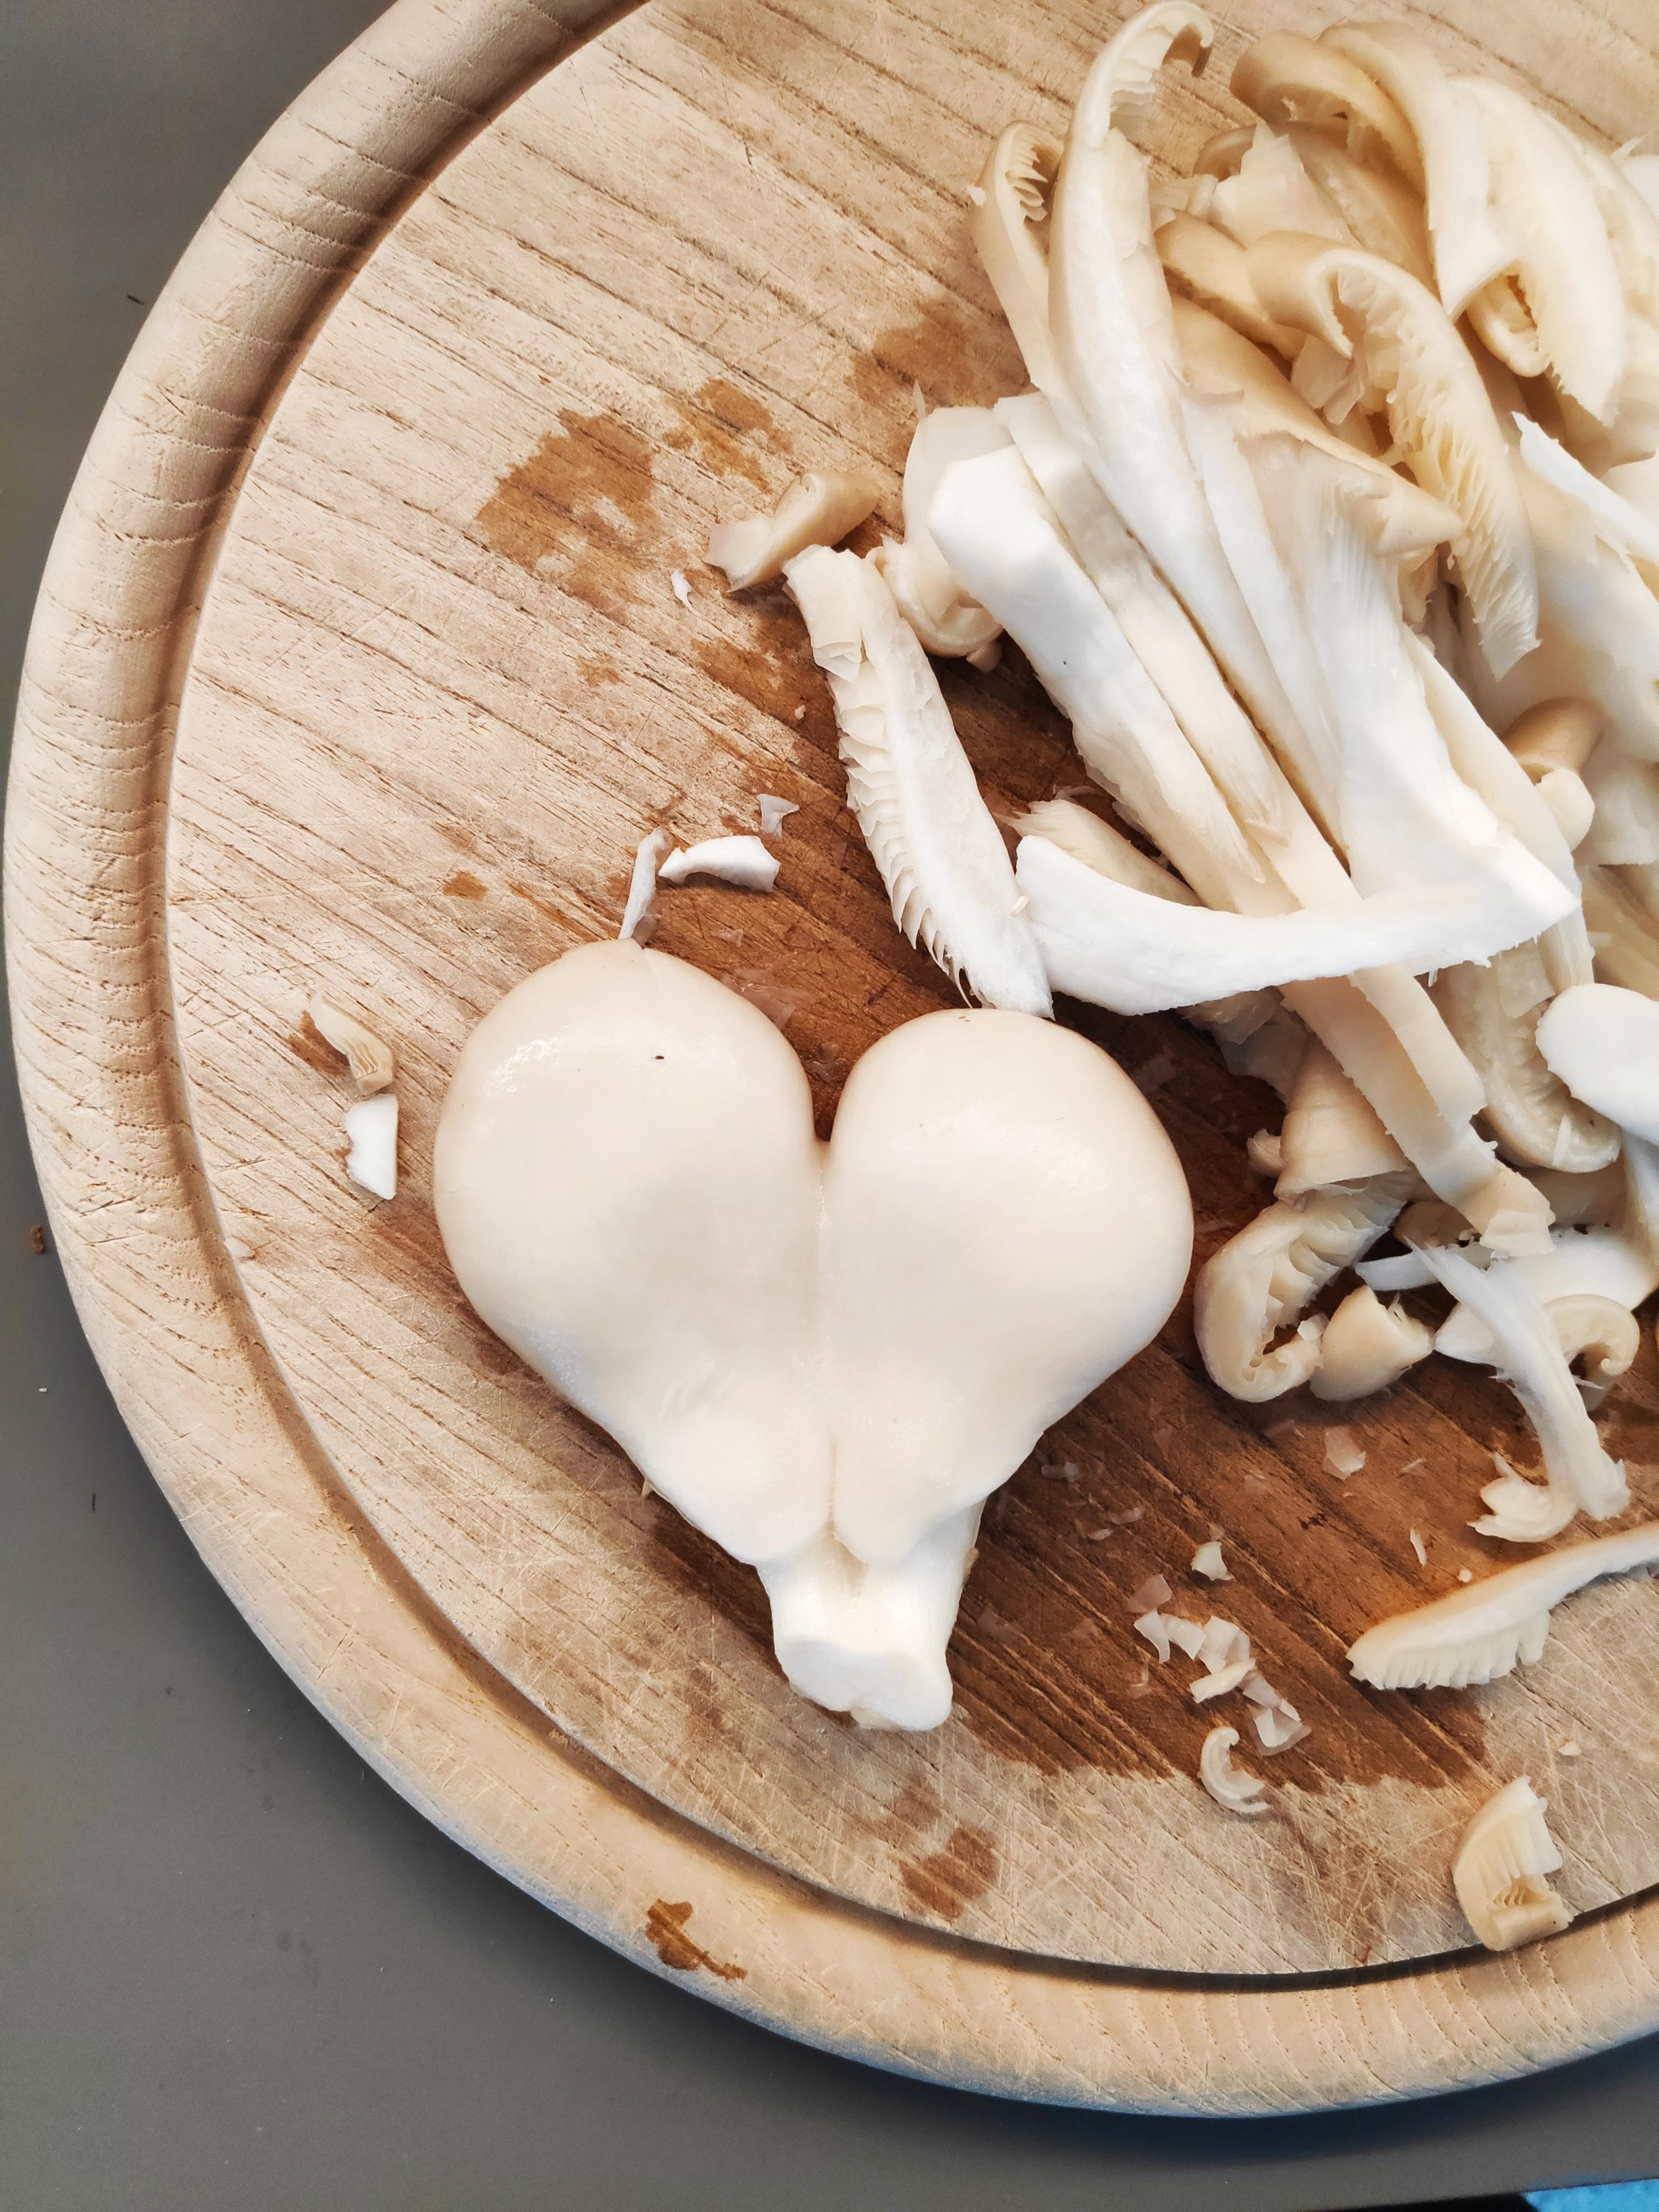 .Liebe gibt es überall ❤️.
#Austernpilze #Pilze #Mittagessen #NatürlicheSchönheit